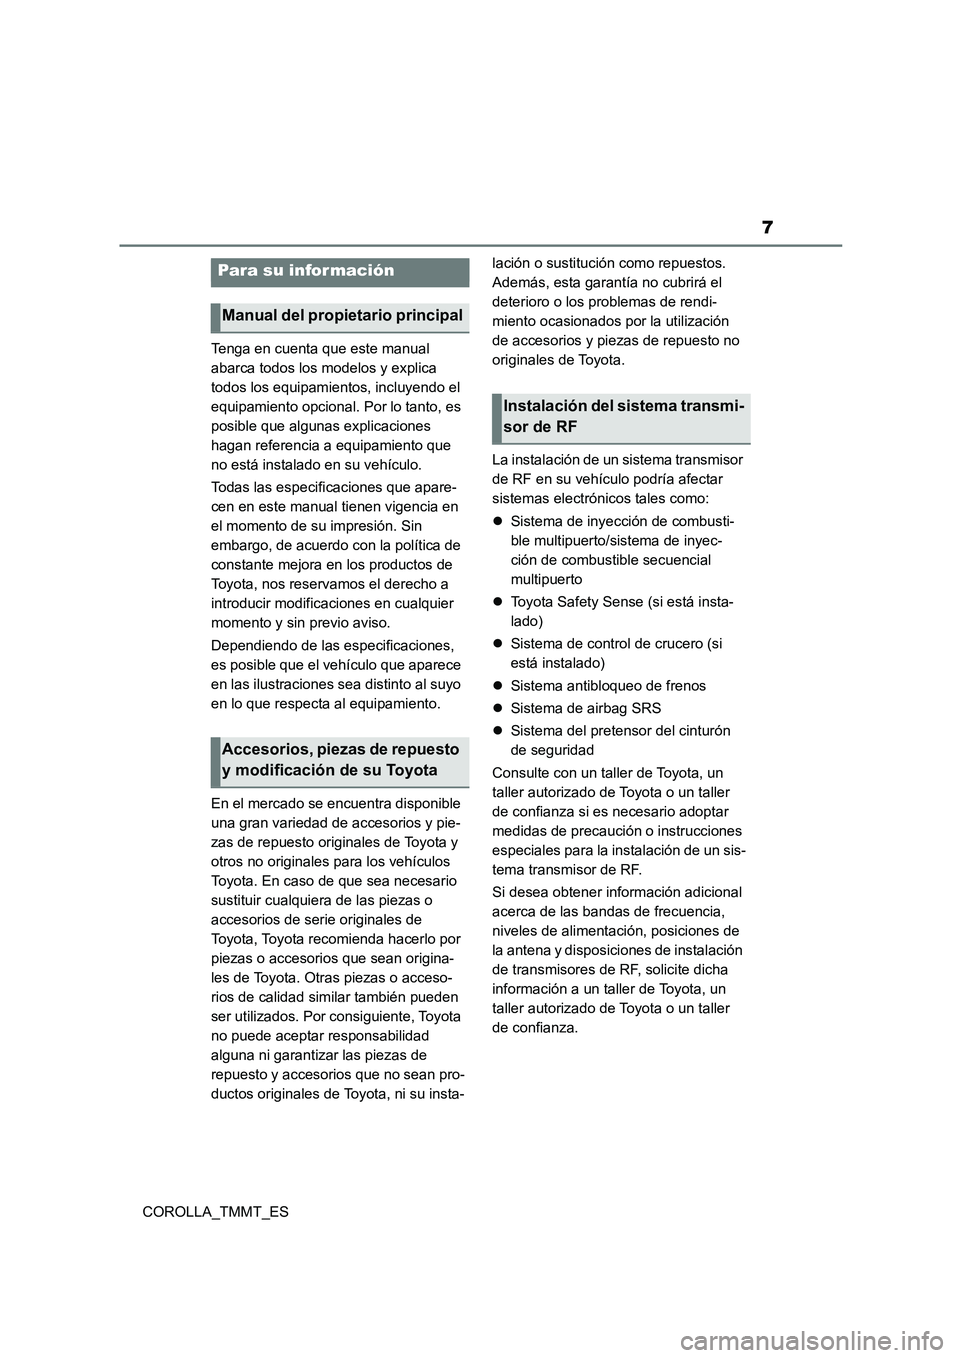 TOYOTA COROLLA 2020  Manual del propietario (in Spanish) 7
COROLLA_TMMT_ES 
Tenga en cuenta que este manual  
abarca todos los modelos y explica 
todos los equipamientos, incluyendo el 
equipamiento opcional. Por lo tanto, es 
posible que algunas explicacio